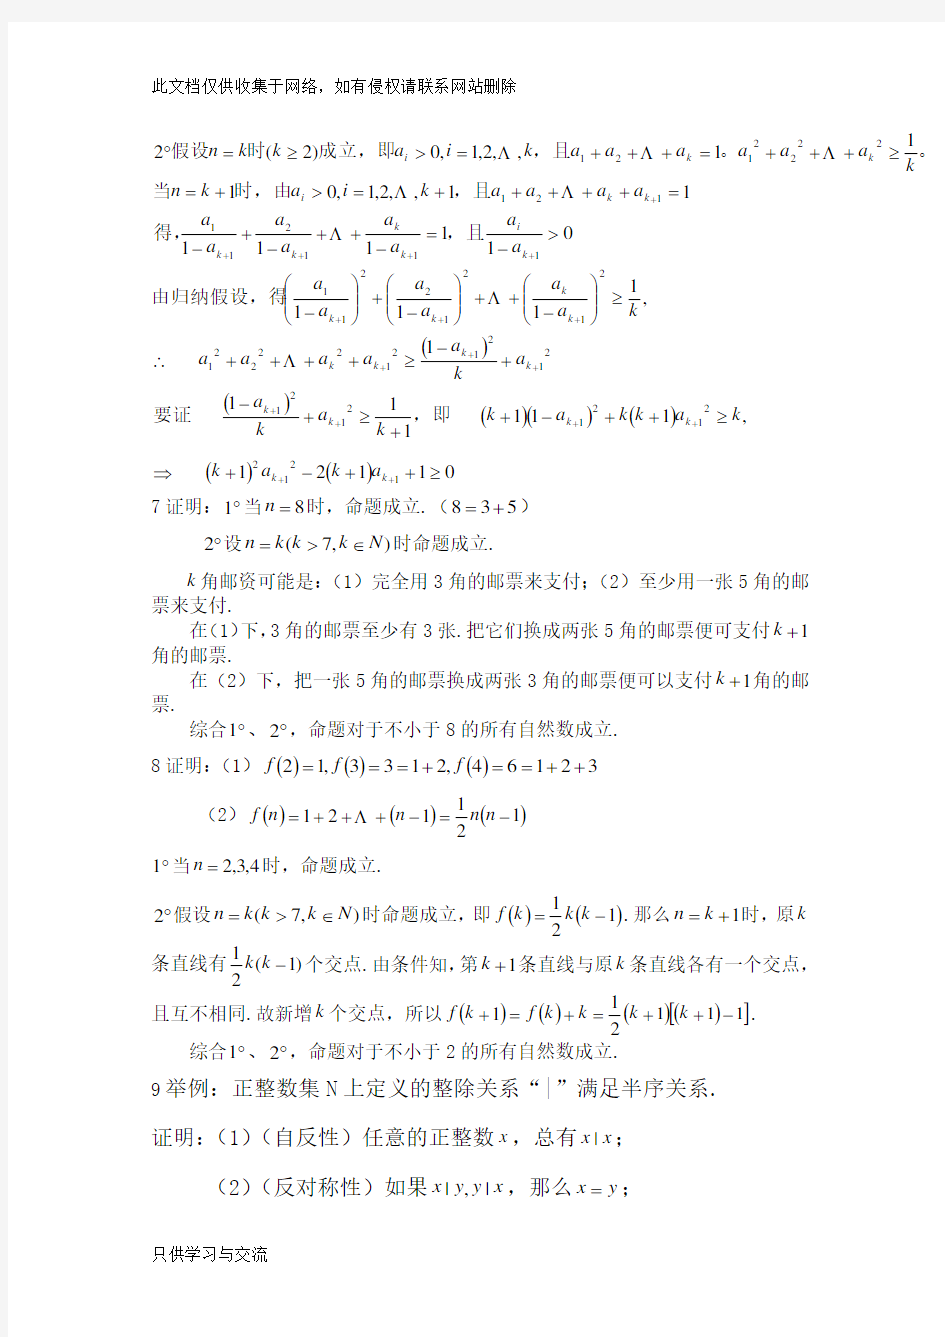 初等数学研究(程晓亮、刘影)版课后习题答案教程文件